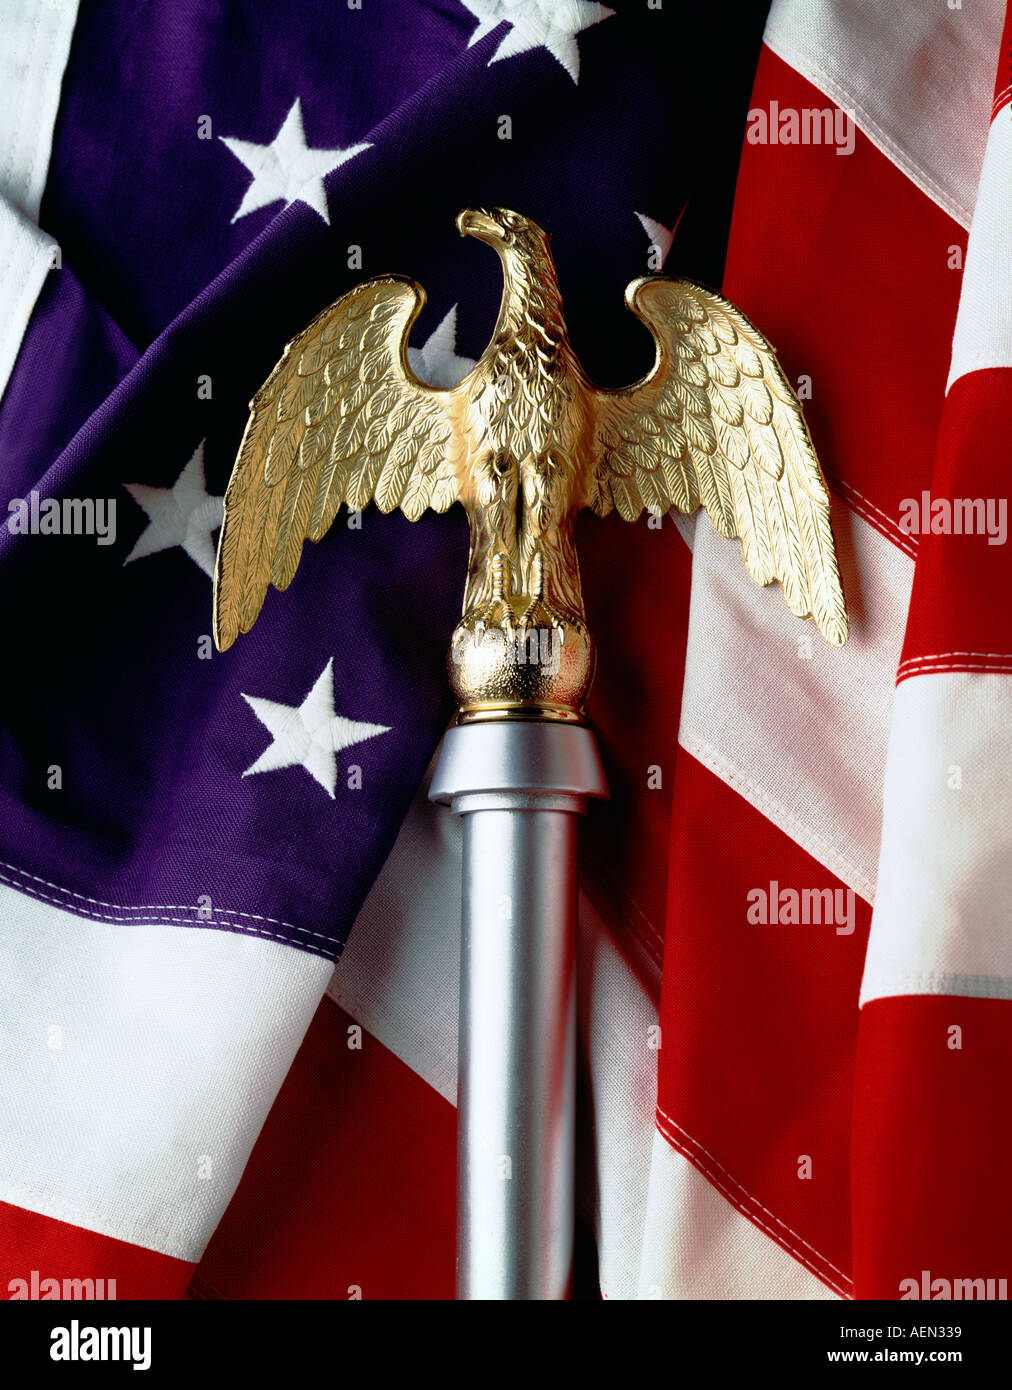 Still Life of American Eagle or ornement drapeau avec le drapeau américain, stars and stripes. Banque D'Images